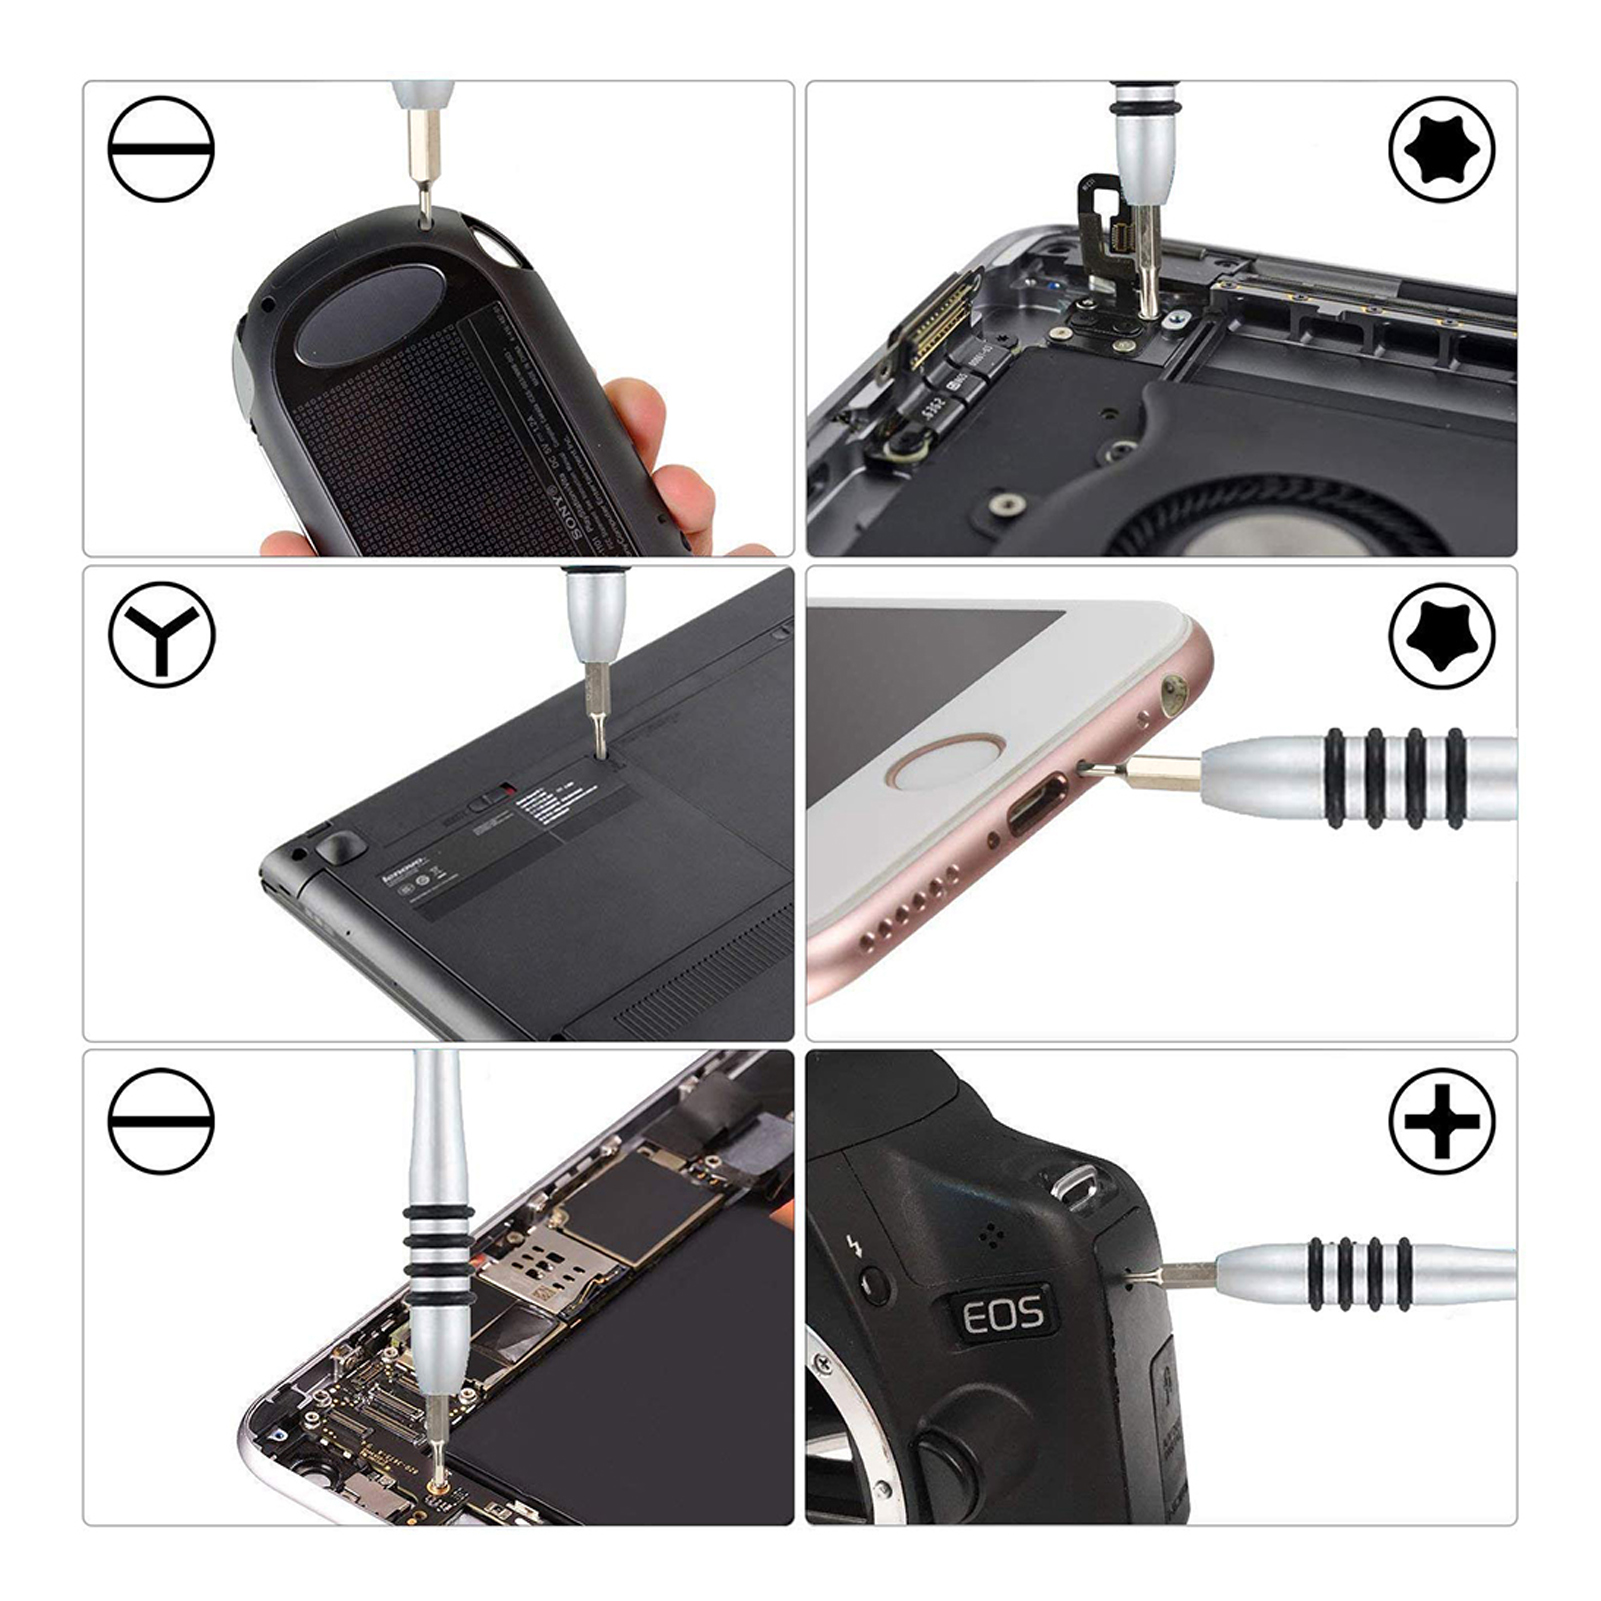 Bộ tua vít 115 chi tiết, đa năng màu đen, xanh, bằng thép hợp kim, dùng để sửa chữa điện thoại, laptop, camera máy tính